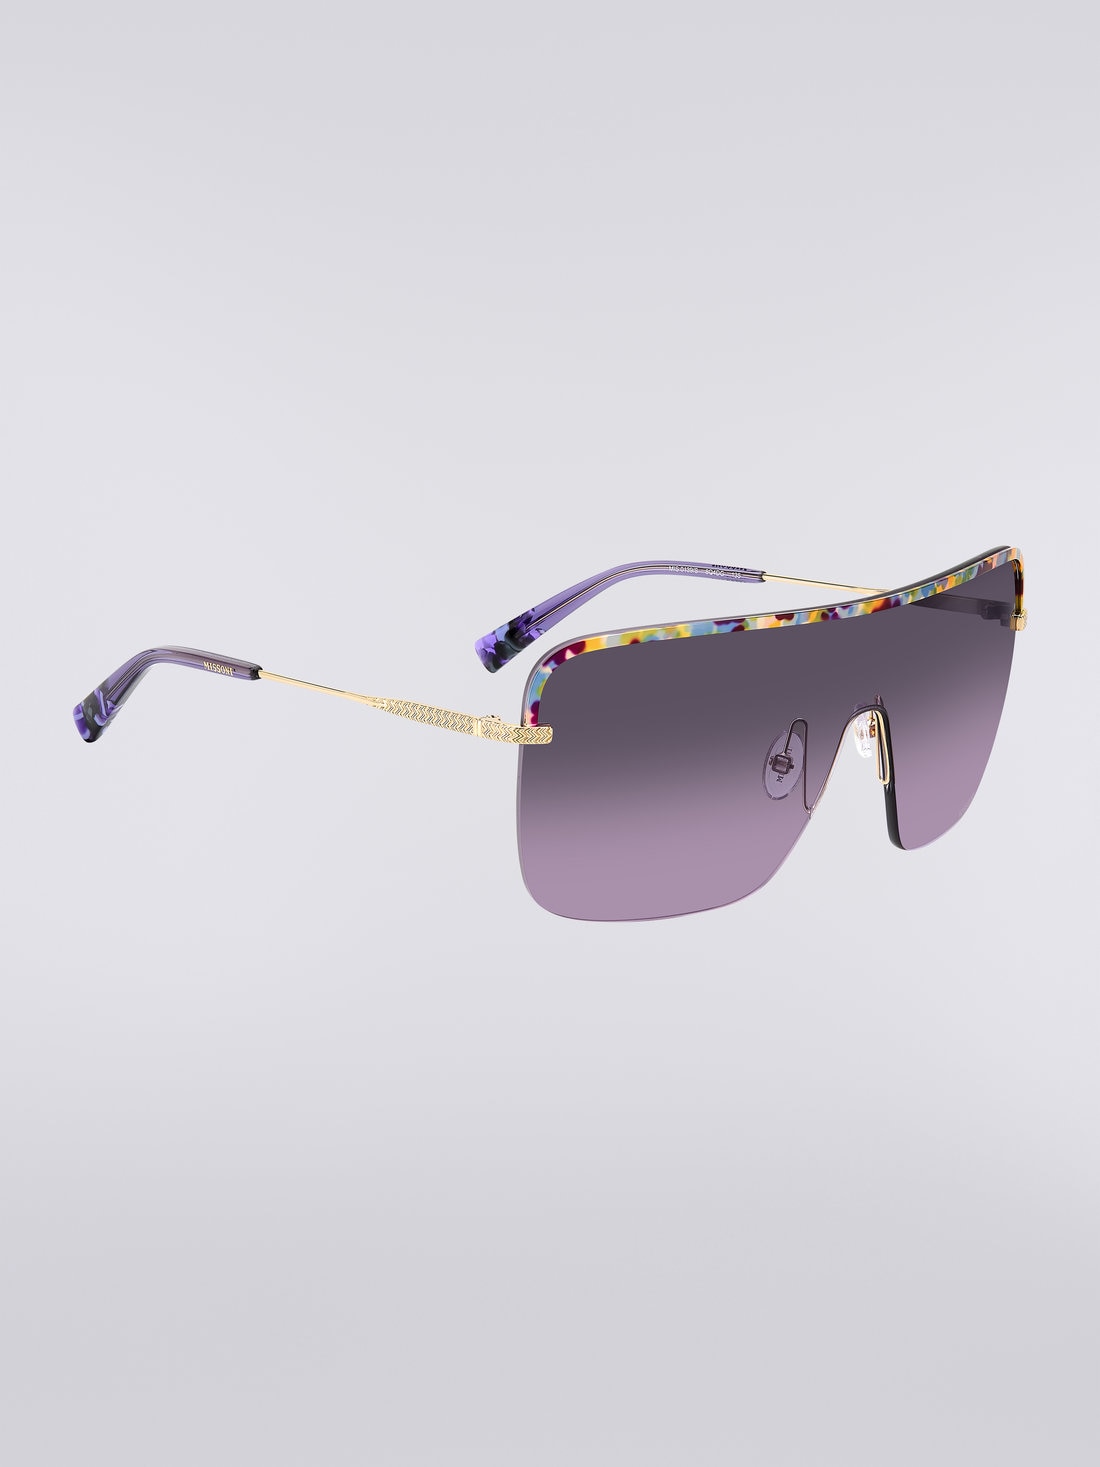 Missoni Seasonal Metal Sunglasses, Multicoloured  - 8051575840227 - 2